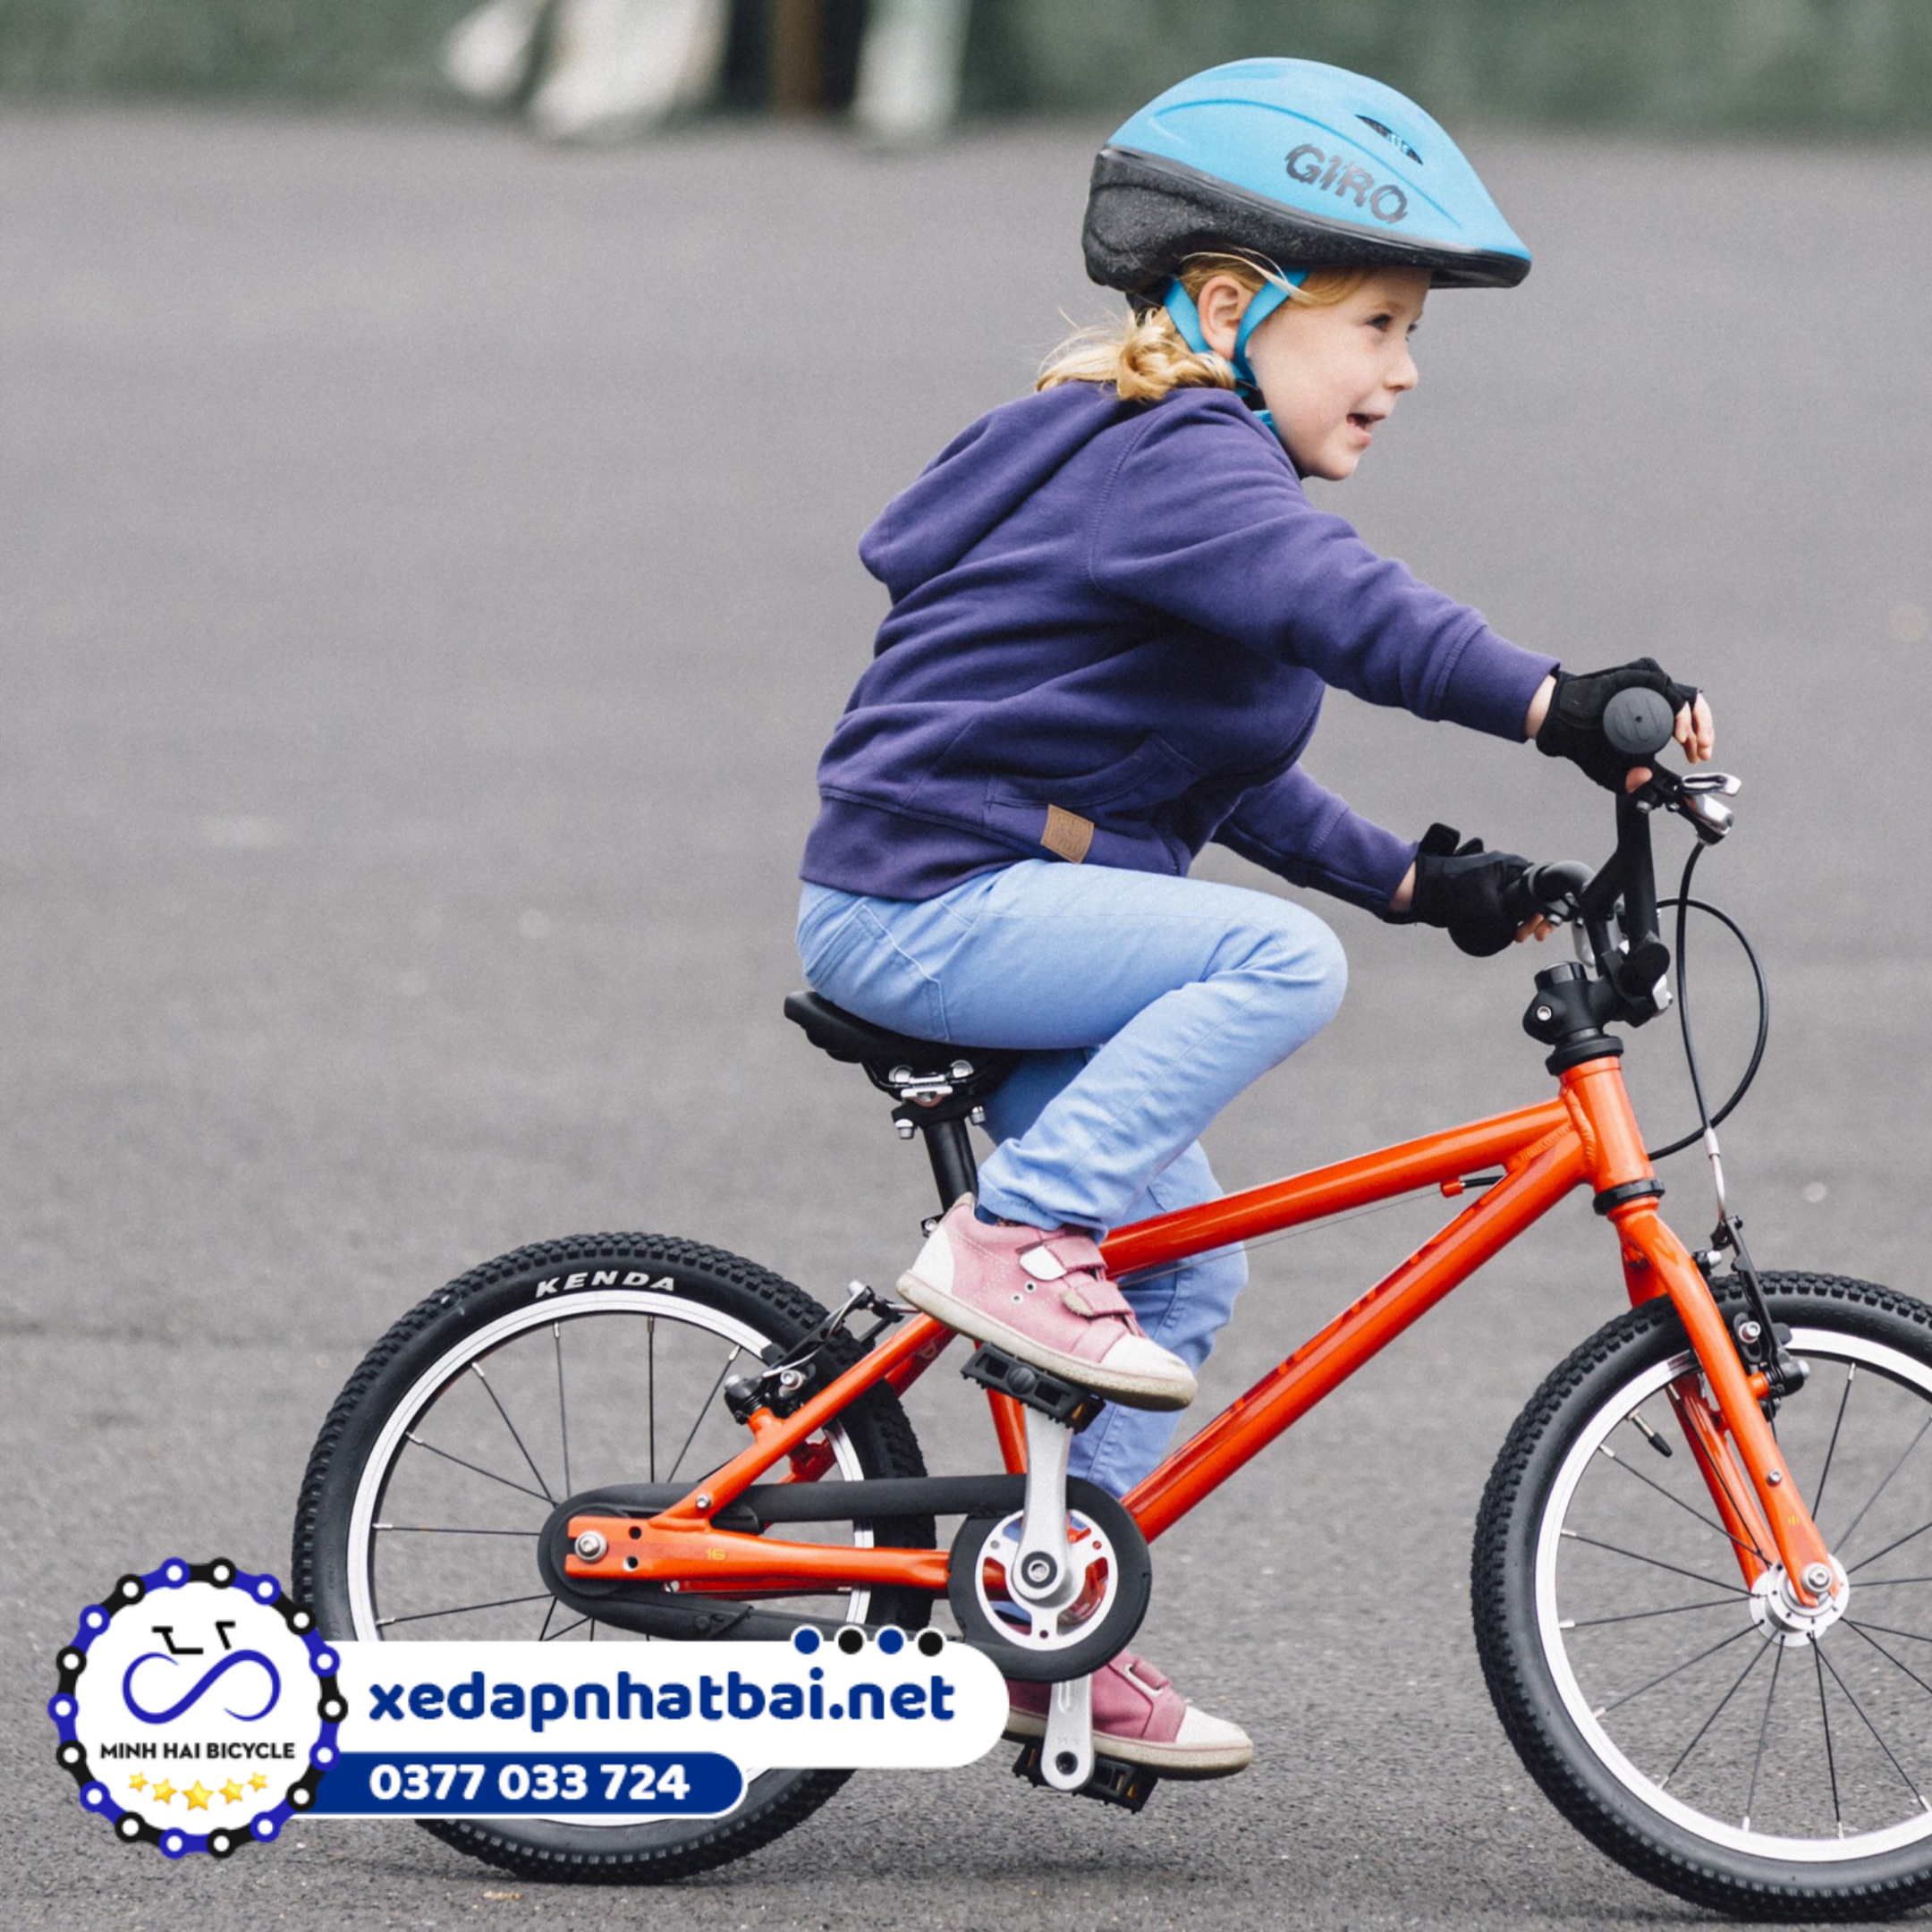 Cách tập xe đạp 2 bánh cho bé nhanh nhất chỉ khi bé thật sự đã sẵn sàng để tham gia và đủ cứng cáp để giữ thăng bằng